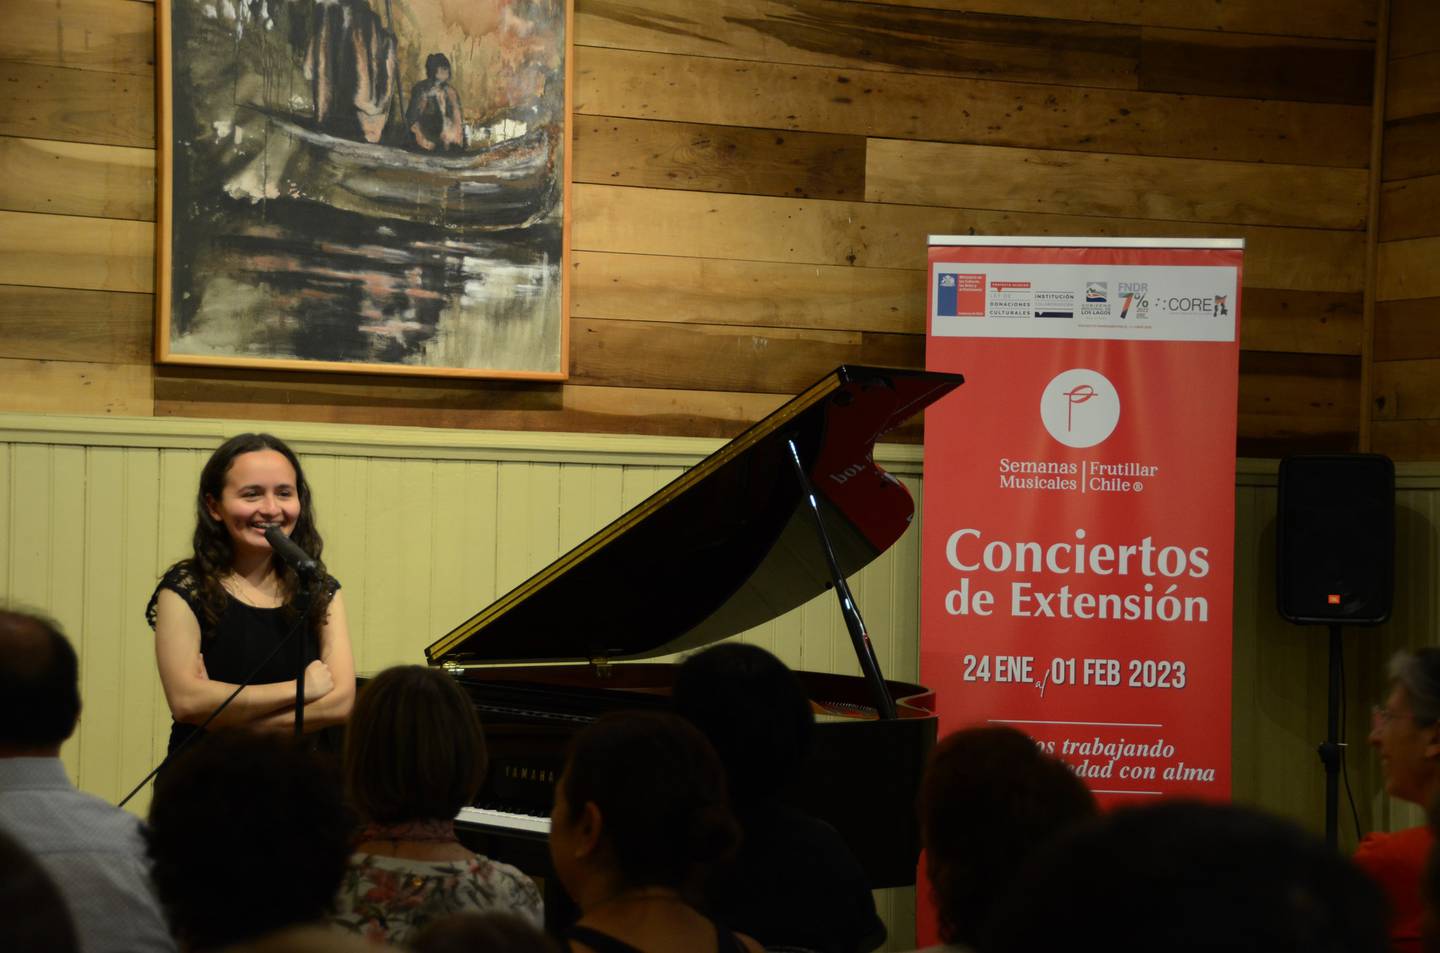 La pianista Daniela Navarro dará un concierto para ayudar a personas de La Carpio y Pavas. Facebook.